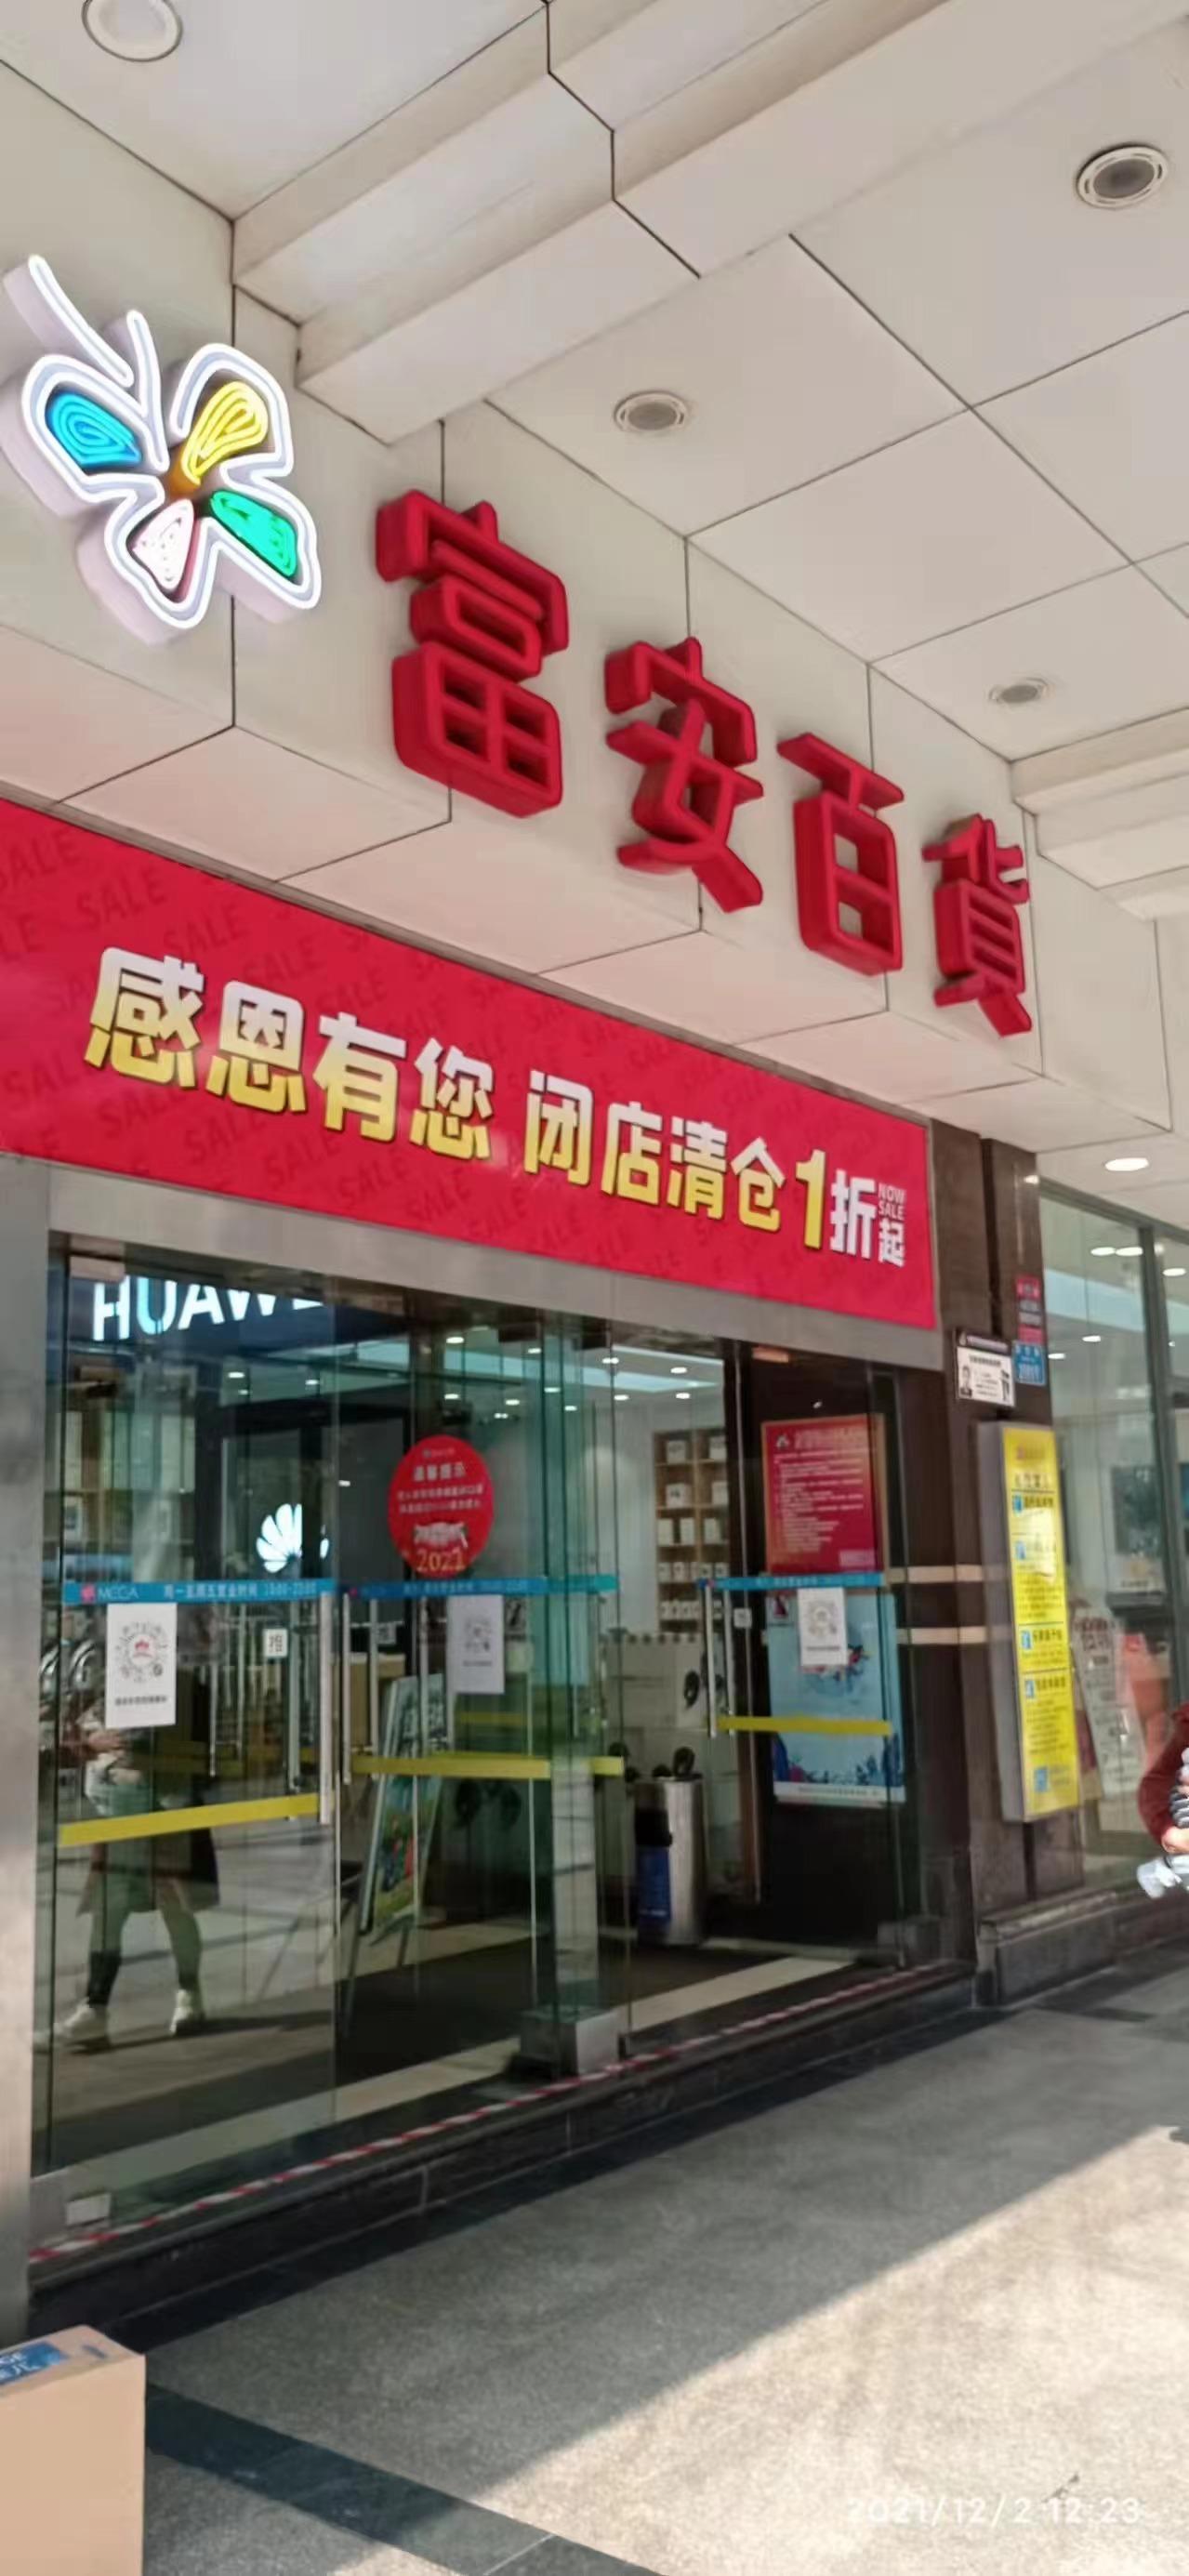 网传重庆杨家坪富安百货正在闭店清仓,对富安百货你有什么记忆?